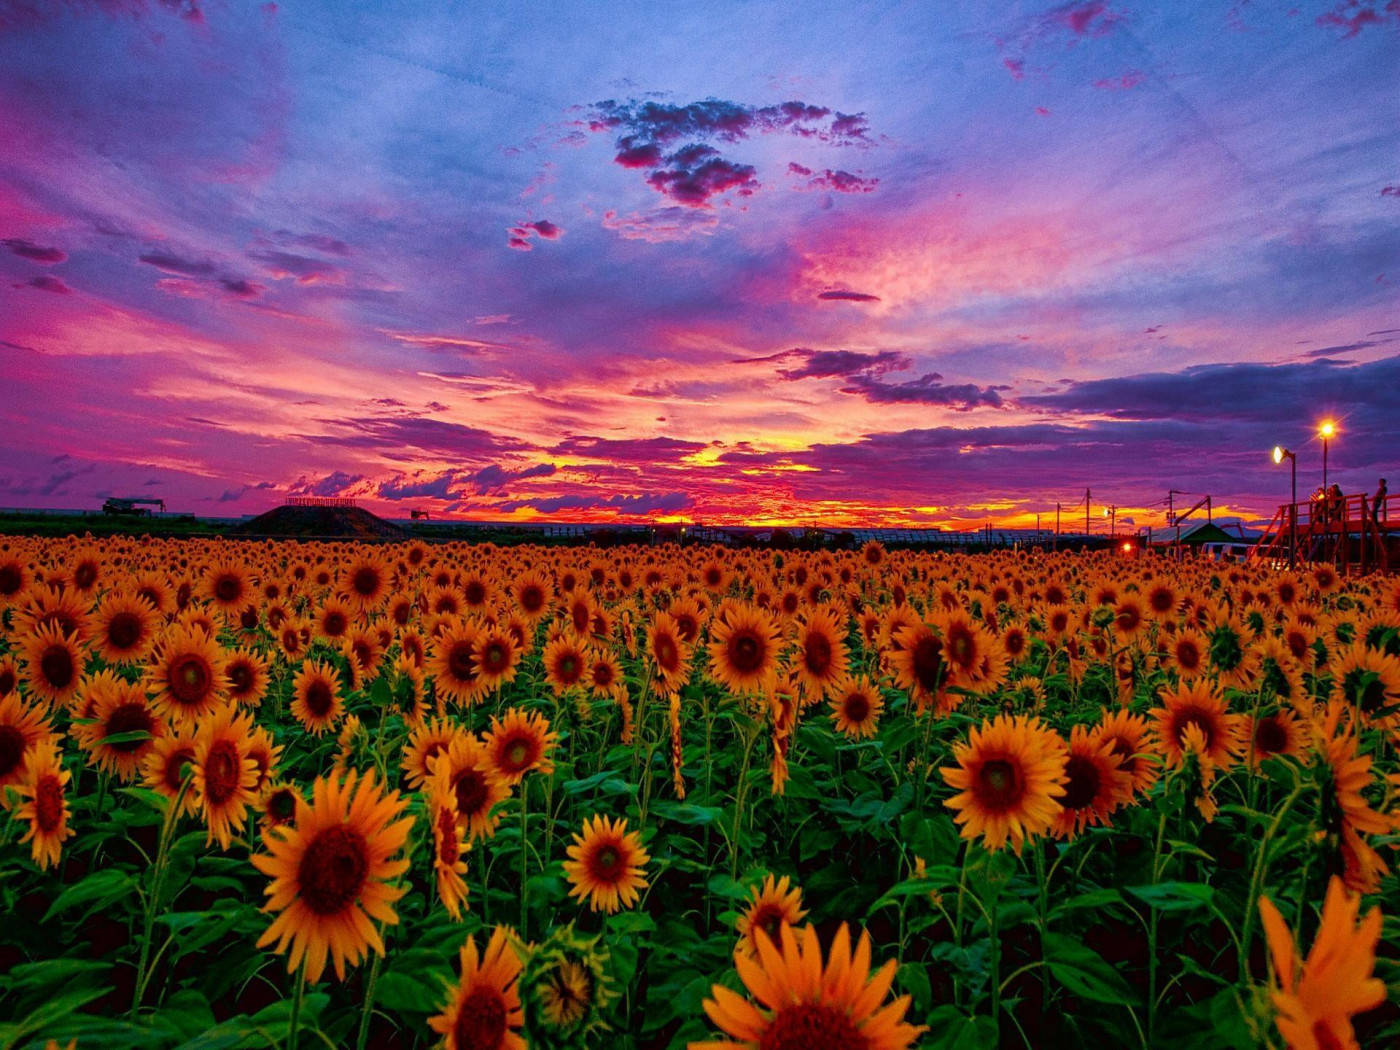 Download Sunflower Field Pink Sunset Wallpaper | Wallpapers.com